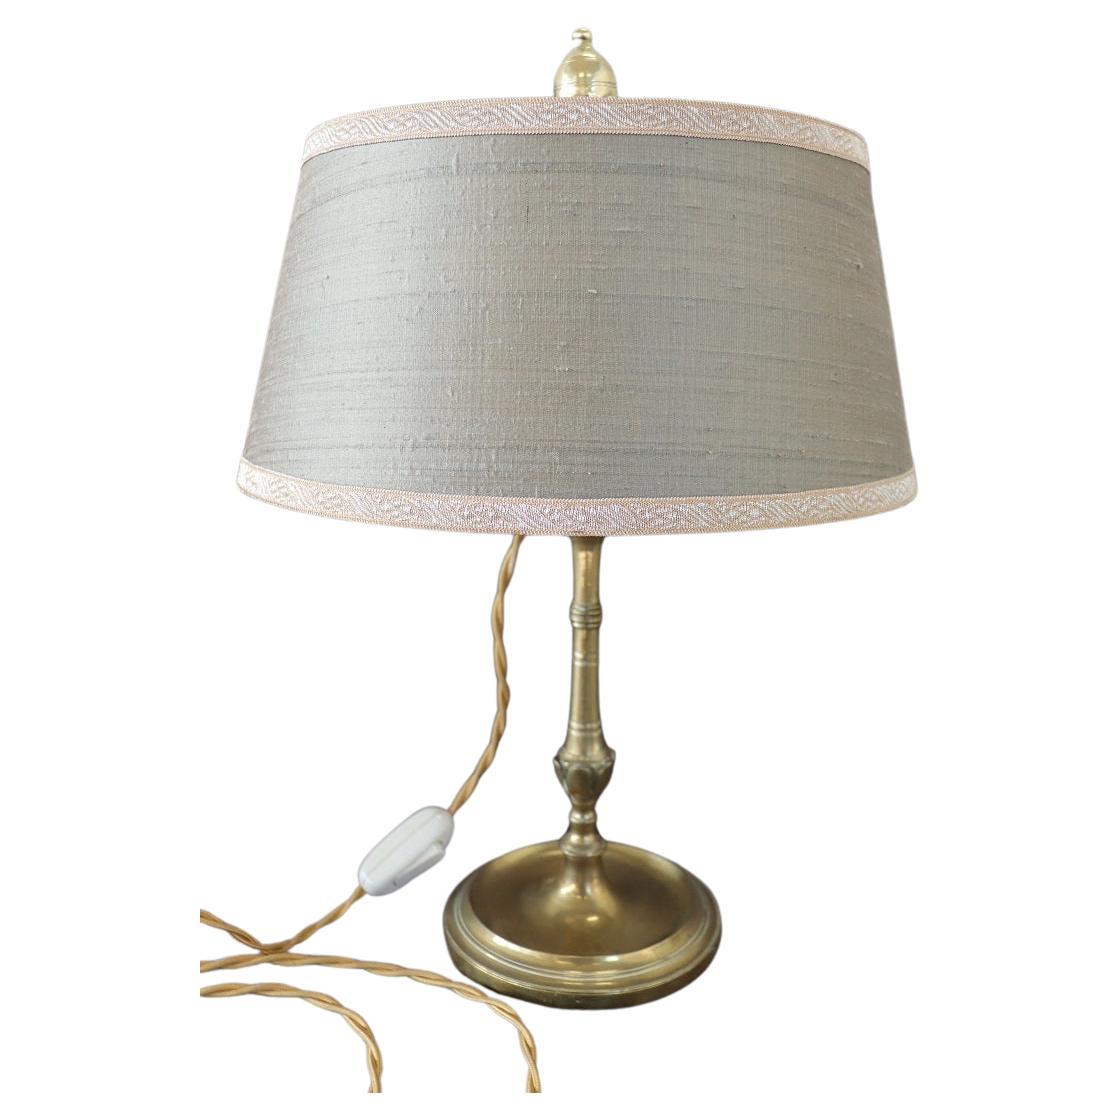 Italian Vintage Brass Table Lamp with Four Light Bulbs